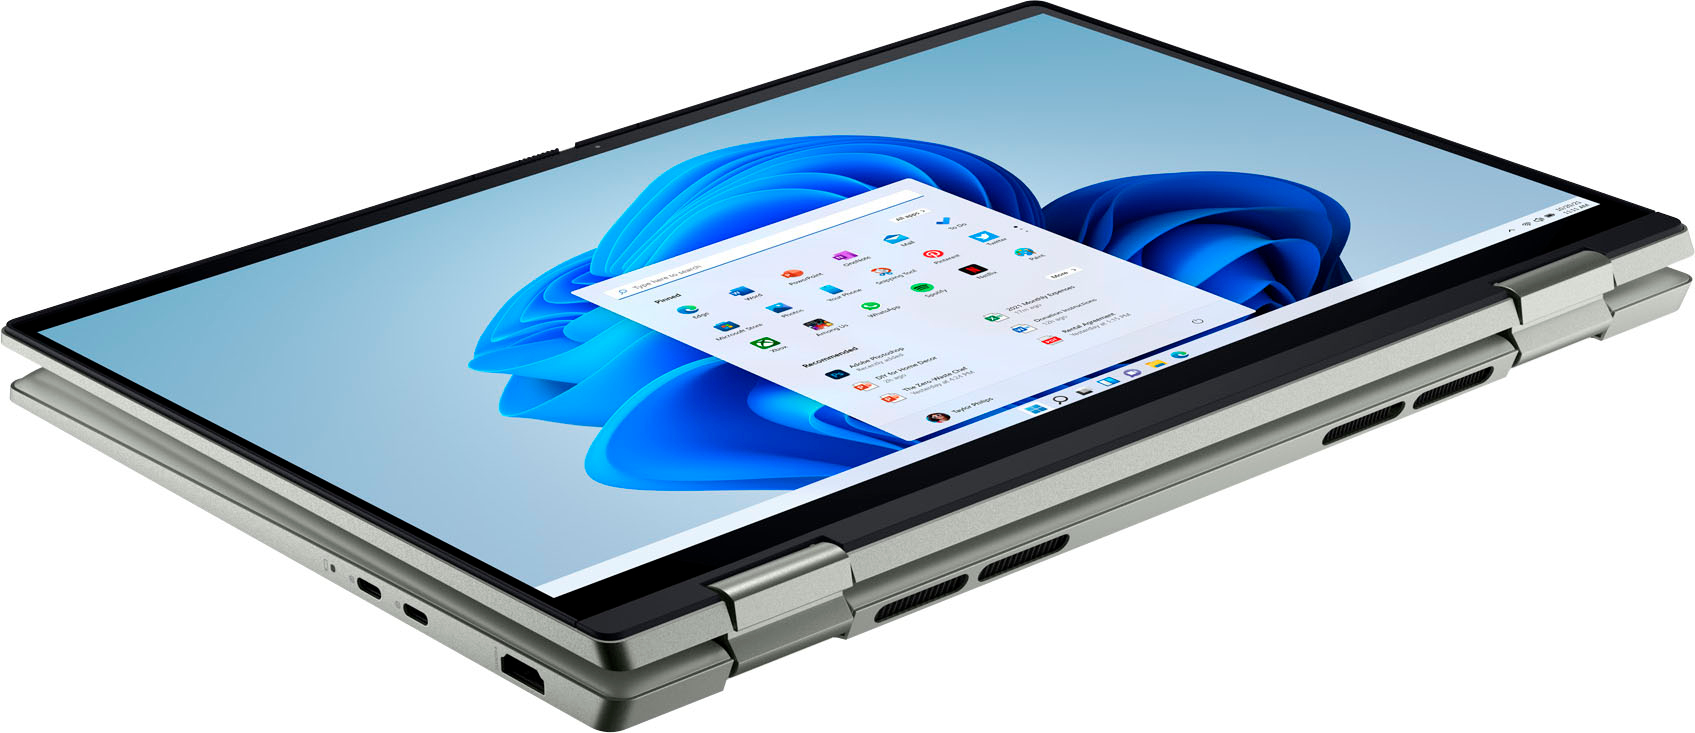 Best Buy: Dell Inspiron 2-in-1 14” FHD+ Touch Laptop – AMD Ryzen 7 